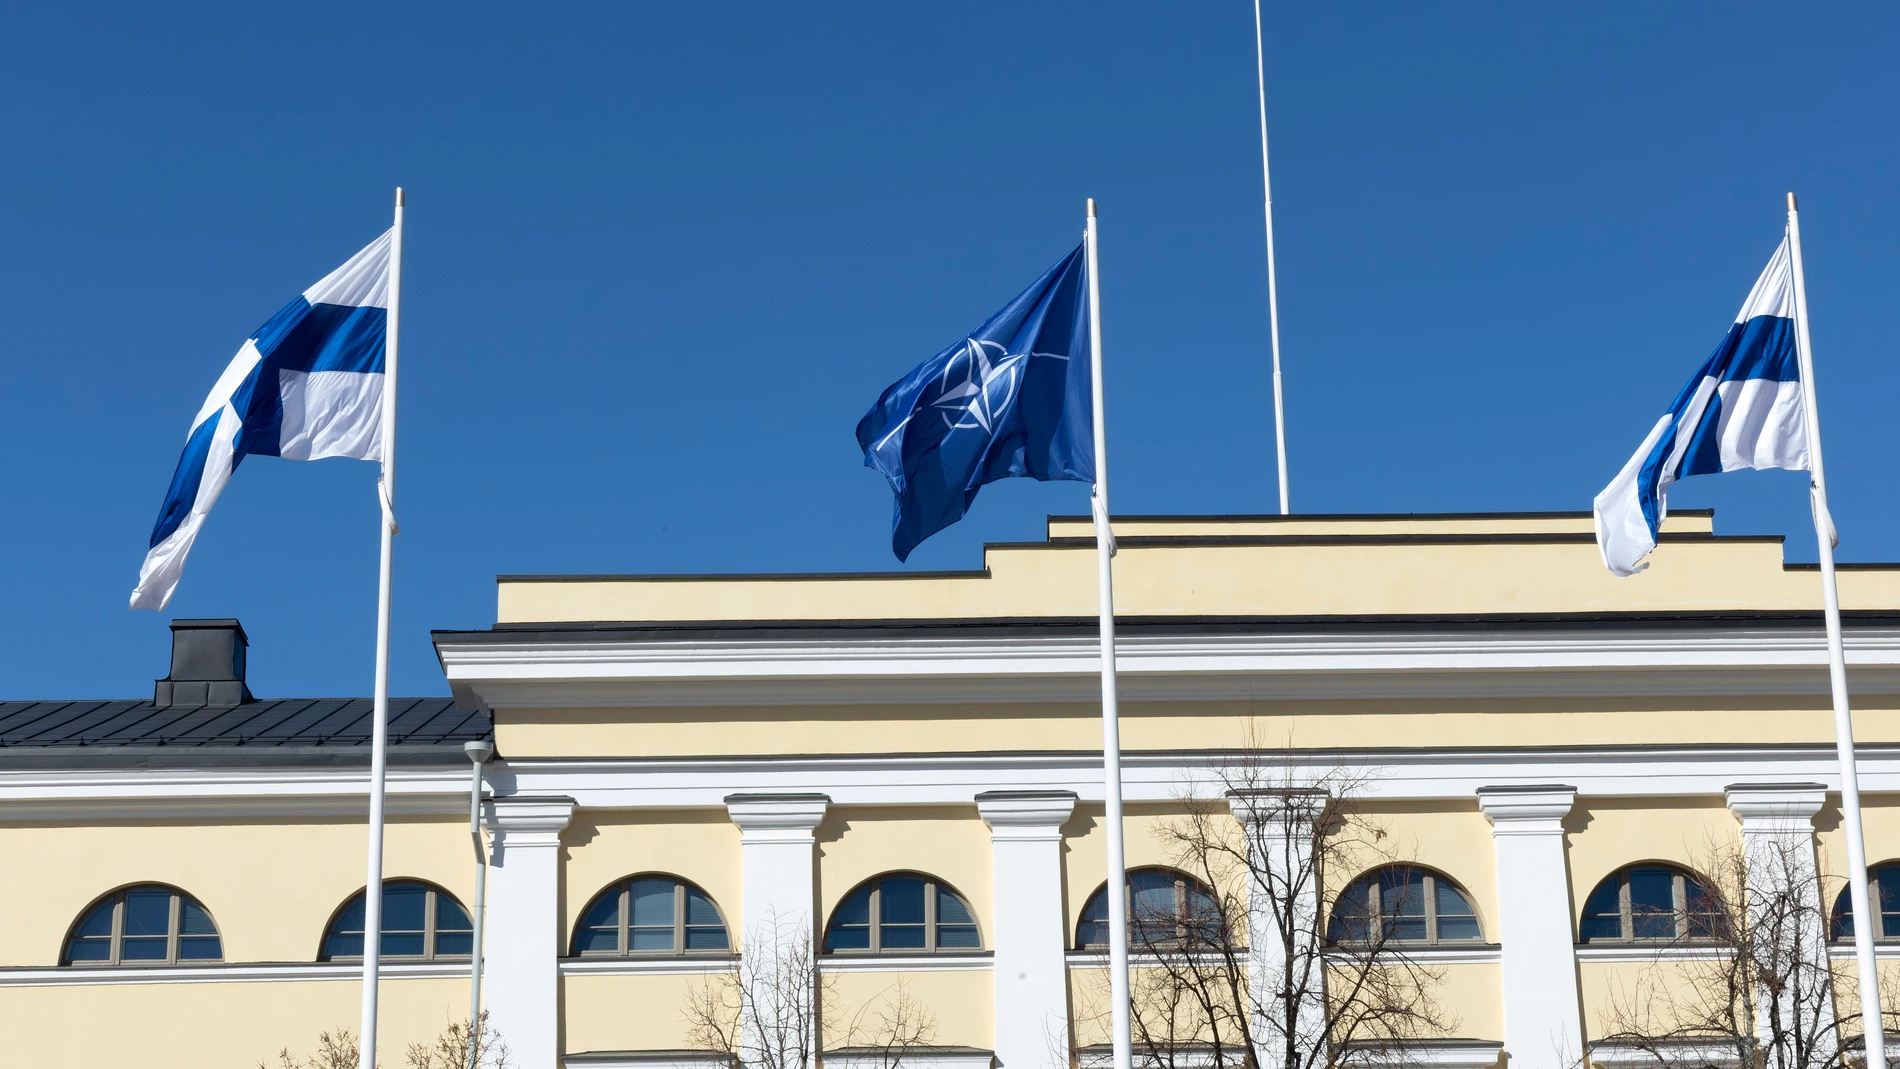 -FOTODELDÍA- HELSINKI (FINLANDIA), 04/04/2023.- Dos banderas finlandesas ondean junto a la bandera de la OTAN frente a la sede del Ministerio de Asuntos Exteriores de Finlandia, este martes en Helsinki. El ingreso de Finlandia en la OTAN, consumado hoy en tiempo récord, pone fin a casi ocho décadas de una neutralidad militar -inicialmente impuesta por Moscú y luego voluntaria- que casi con seguridad hubiera continuado de no producirse la invasión rusa de Ucrania. EFE/ Mauri Ratilainen